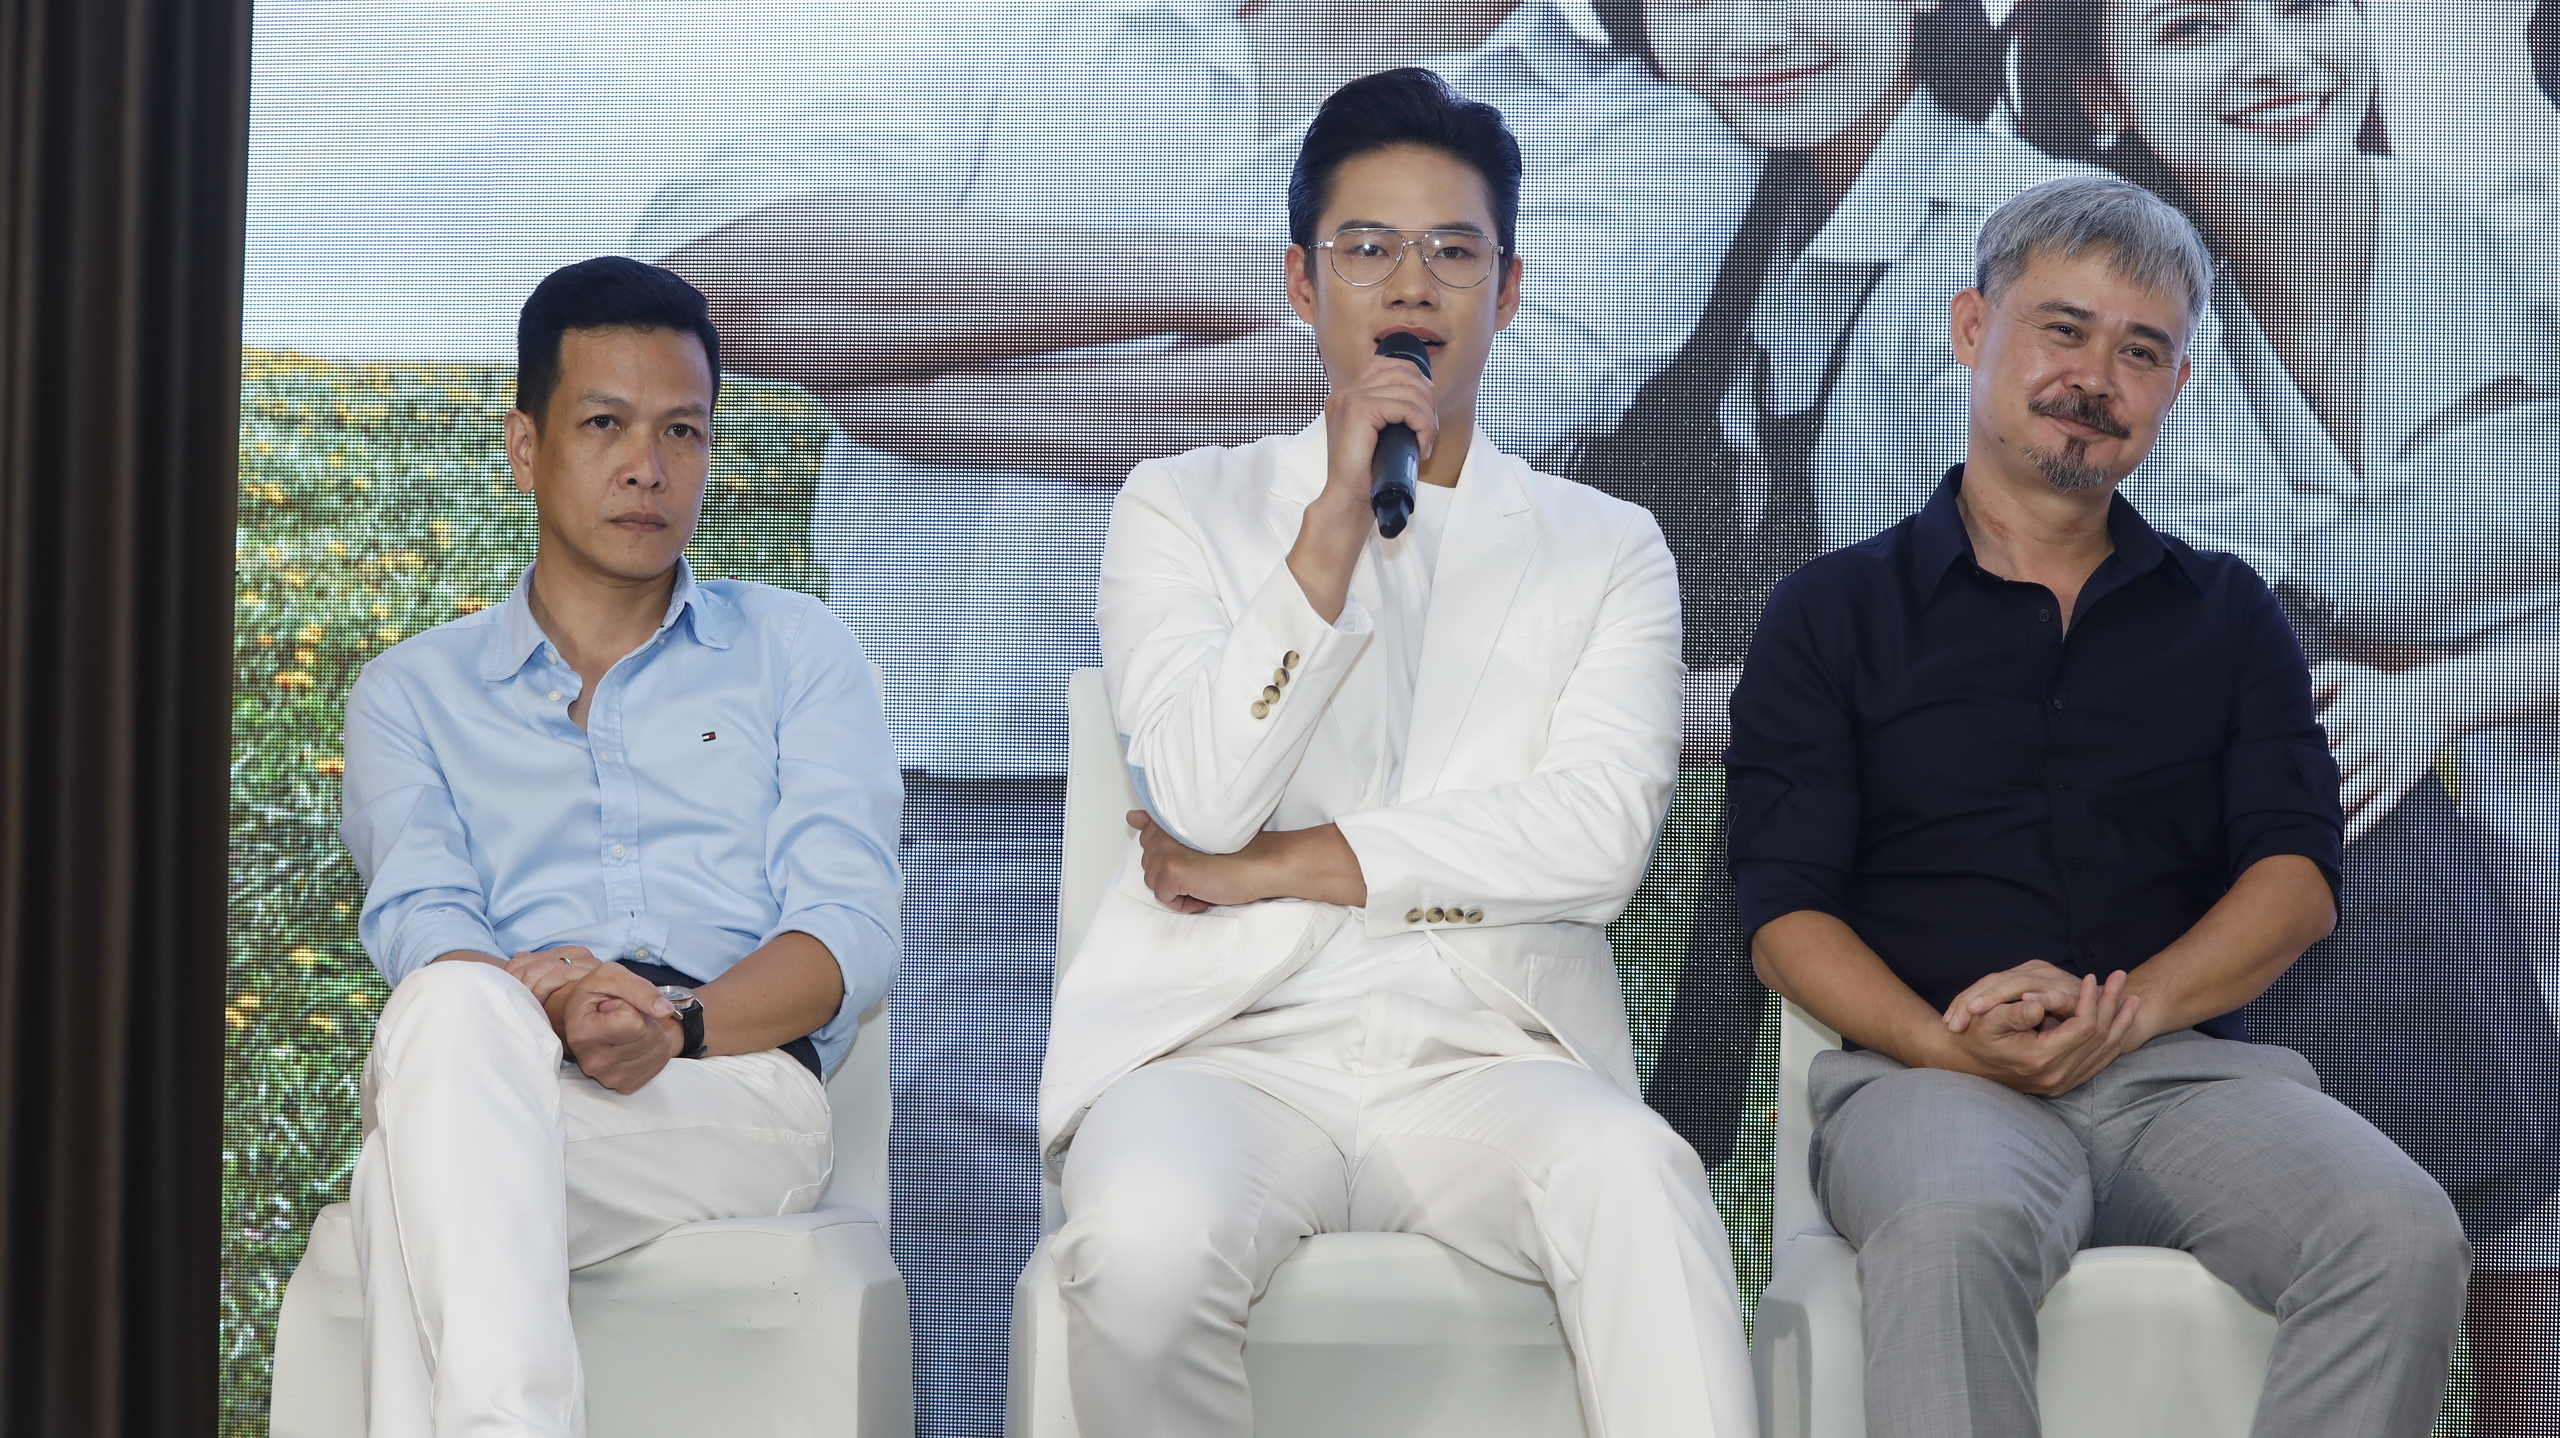 Lý do NSƯT Việt Anh chấp nhận “làm nền” cho các diễn viên trẻ trong phim về tình anh em của VTV?